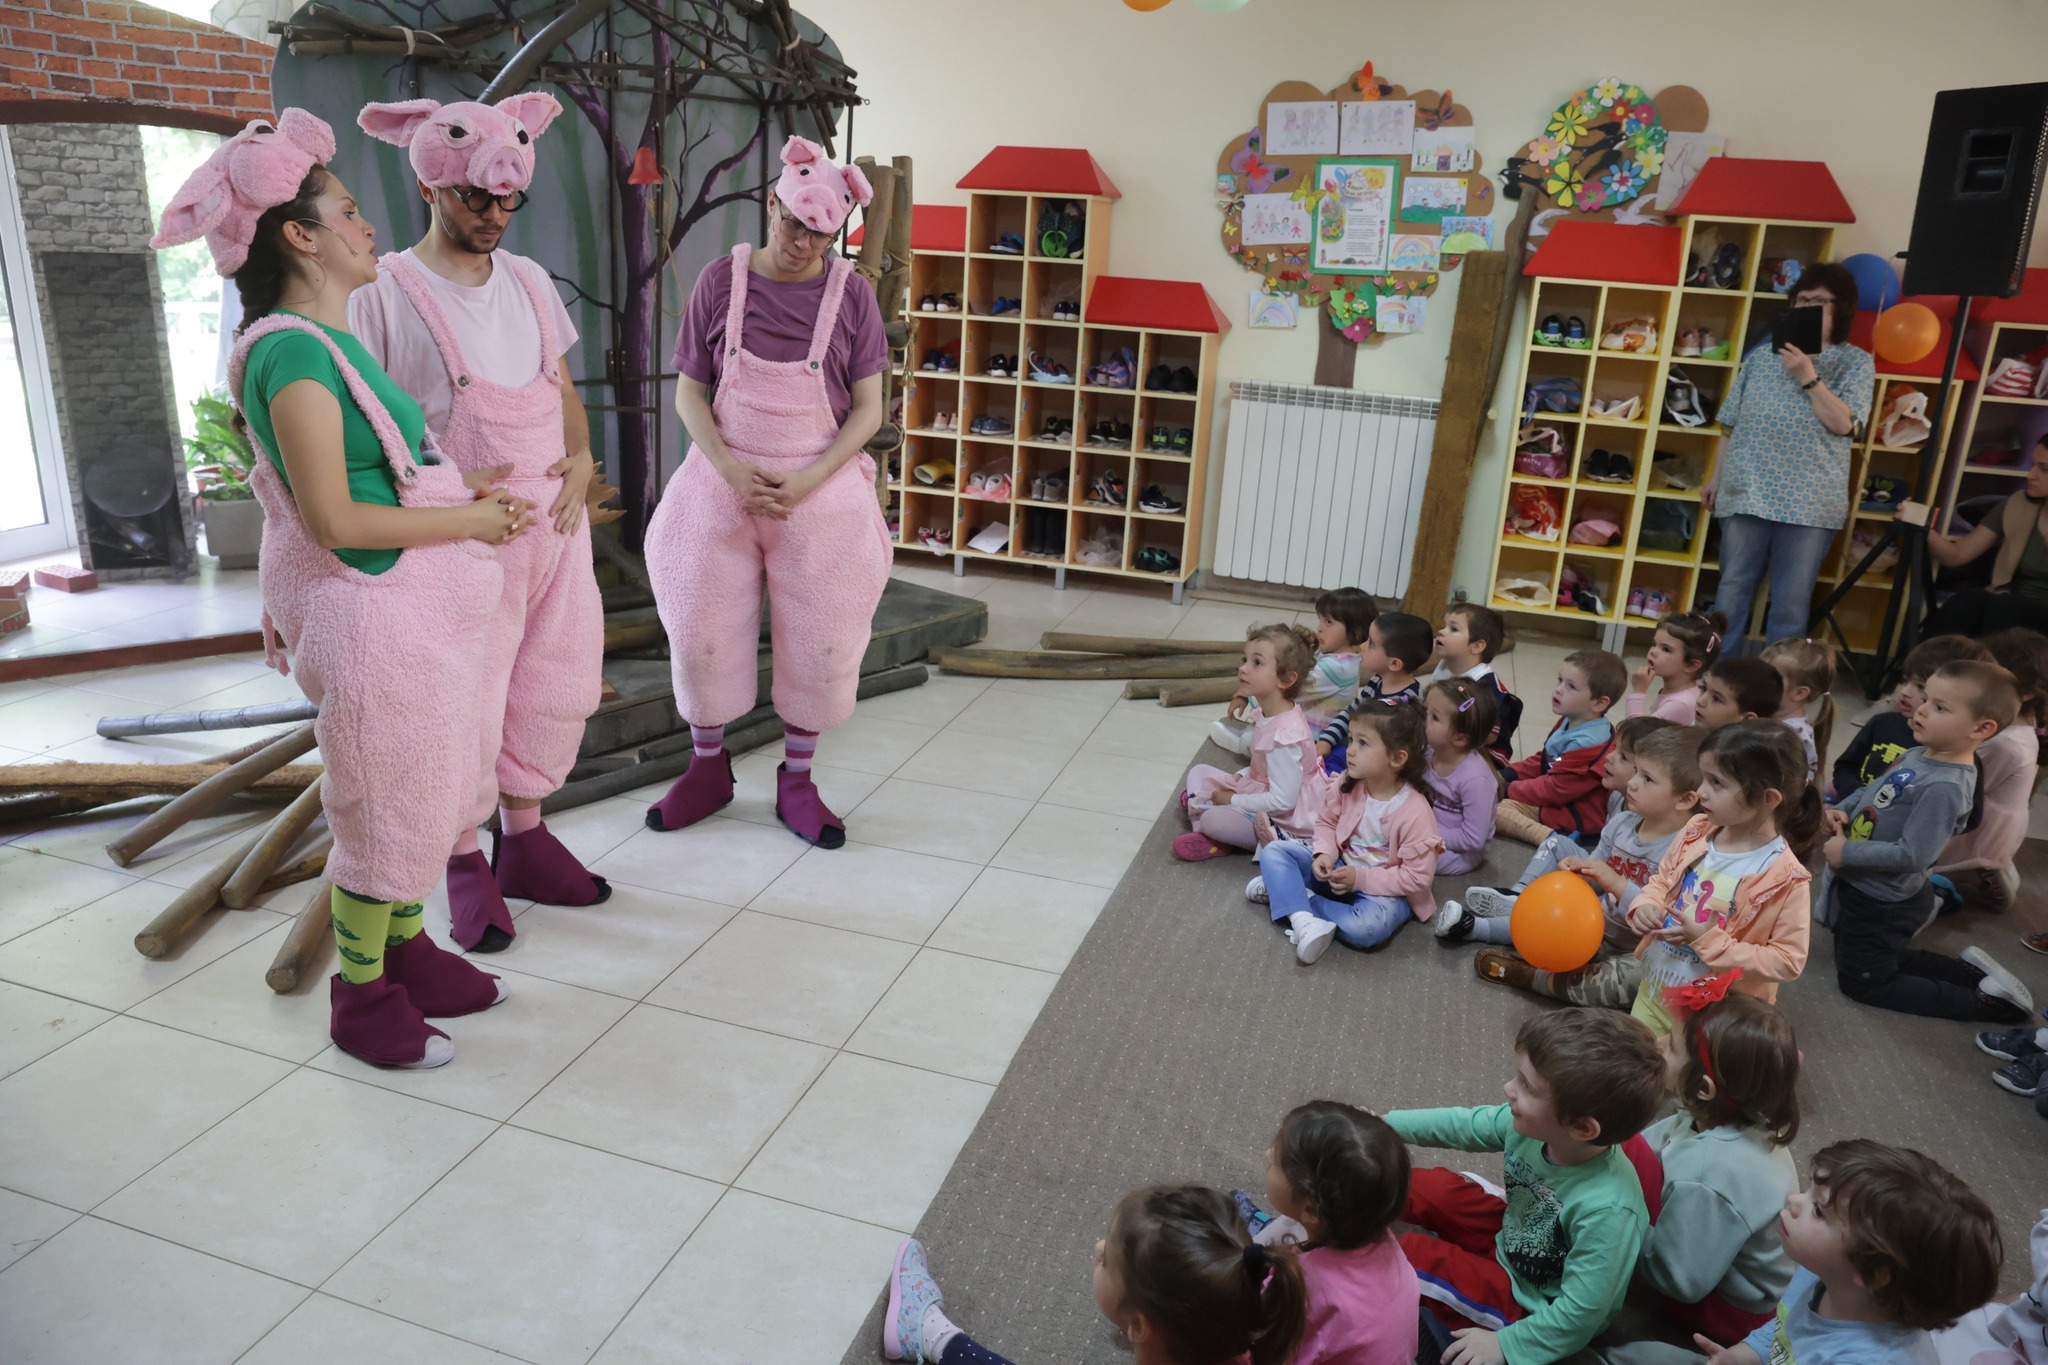 Снимка: В детска градина 136 "Славия" със спектакъла "Трите прасенца" от Александър Райчев